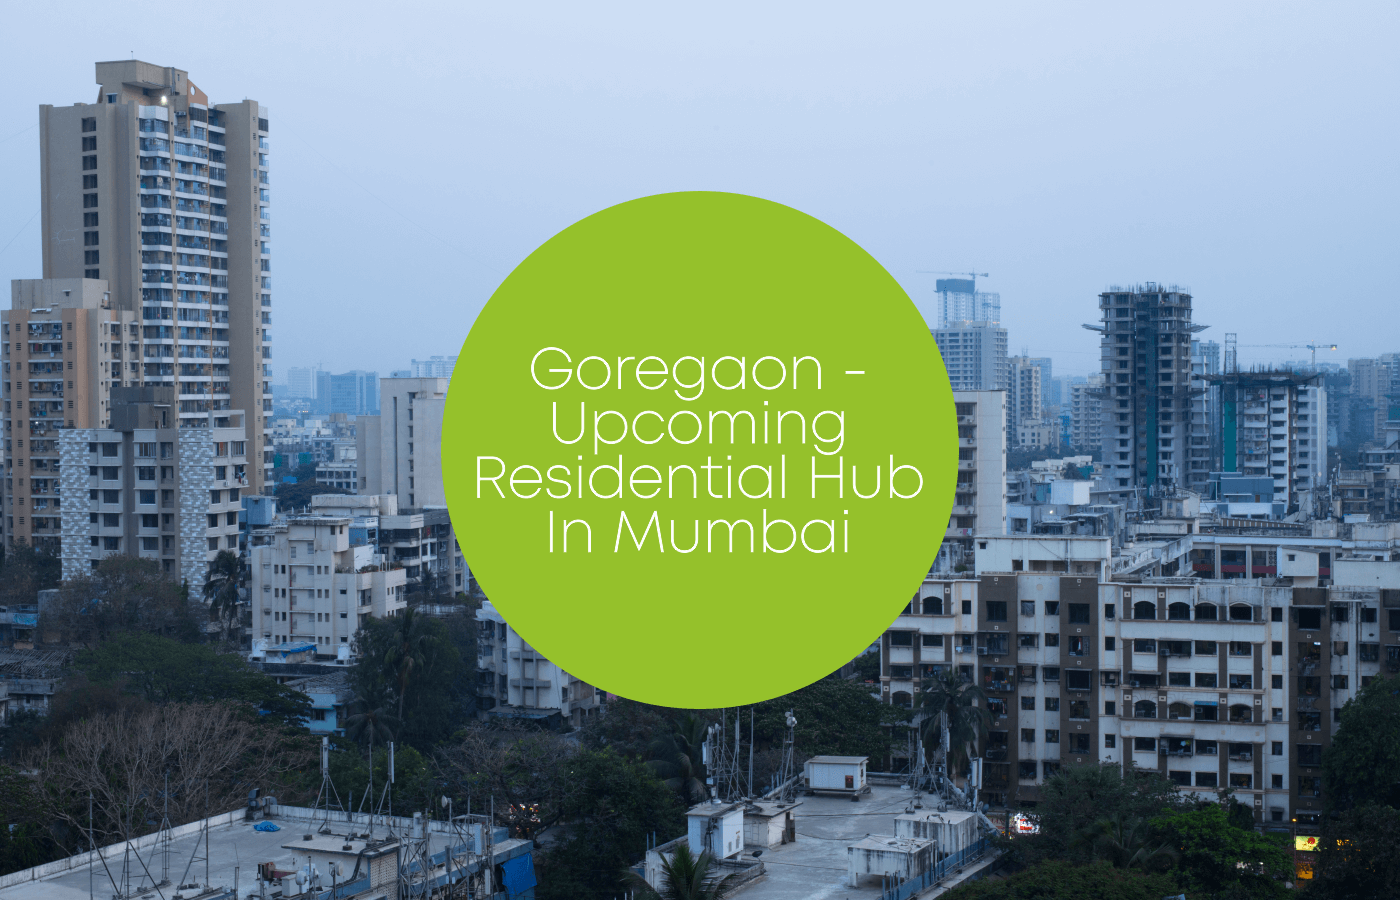 Goregaon - Upcoming Residential Hub in Mumbai